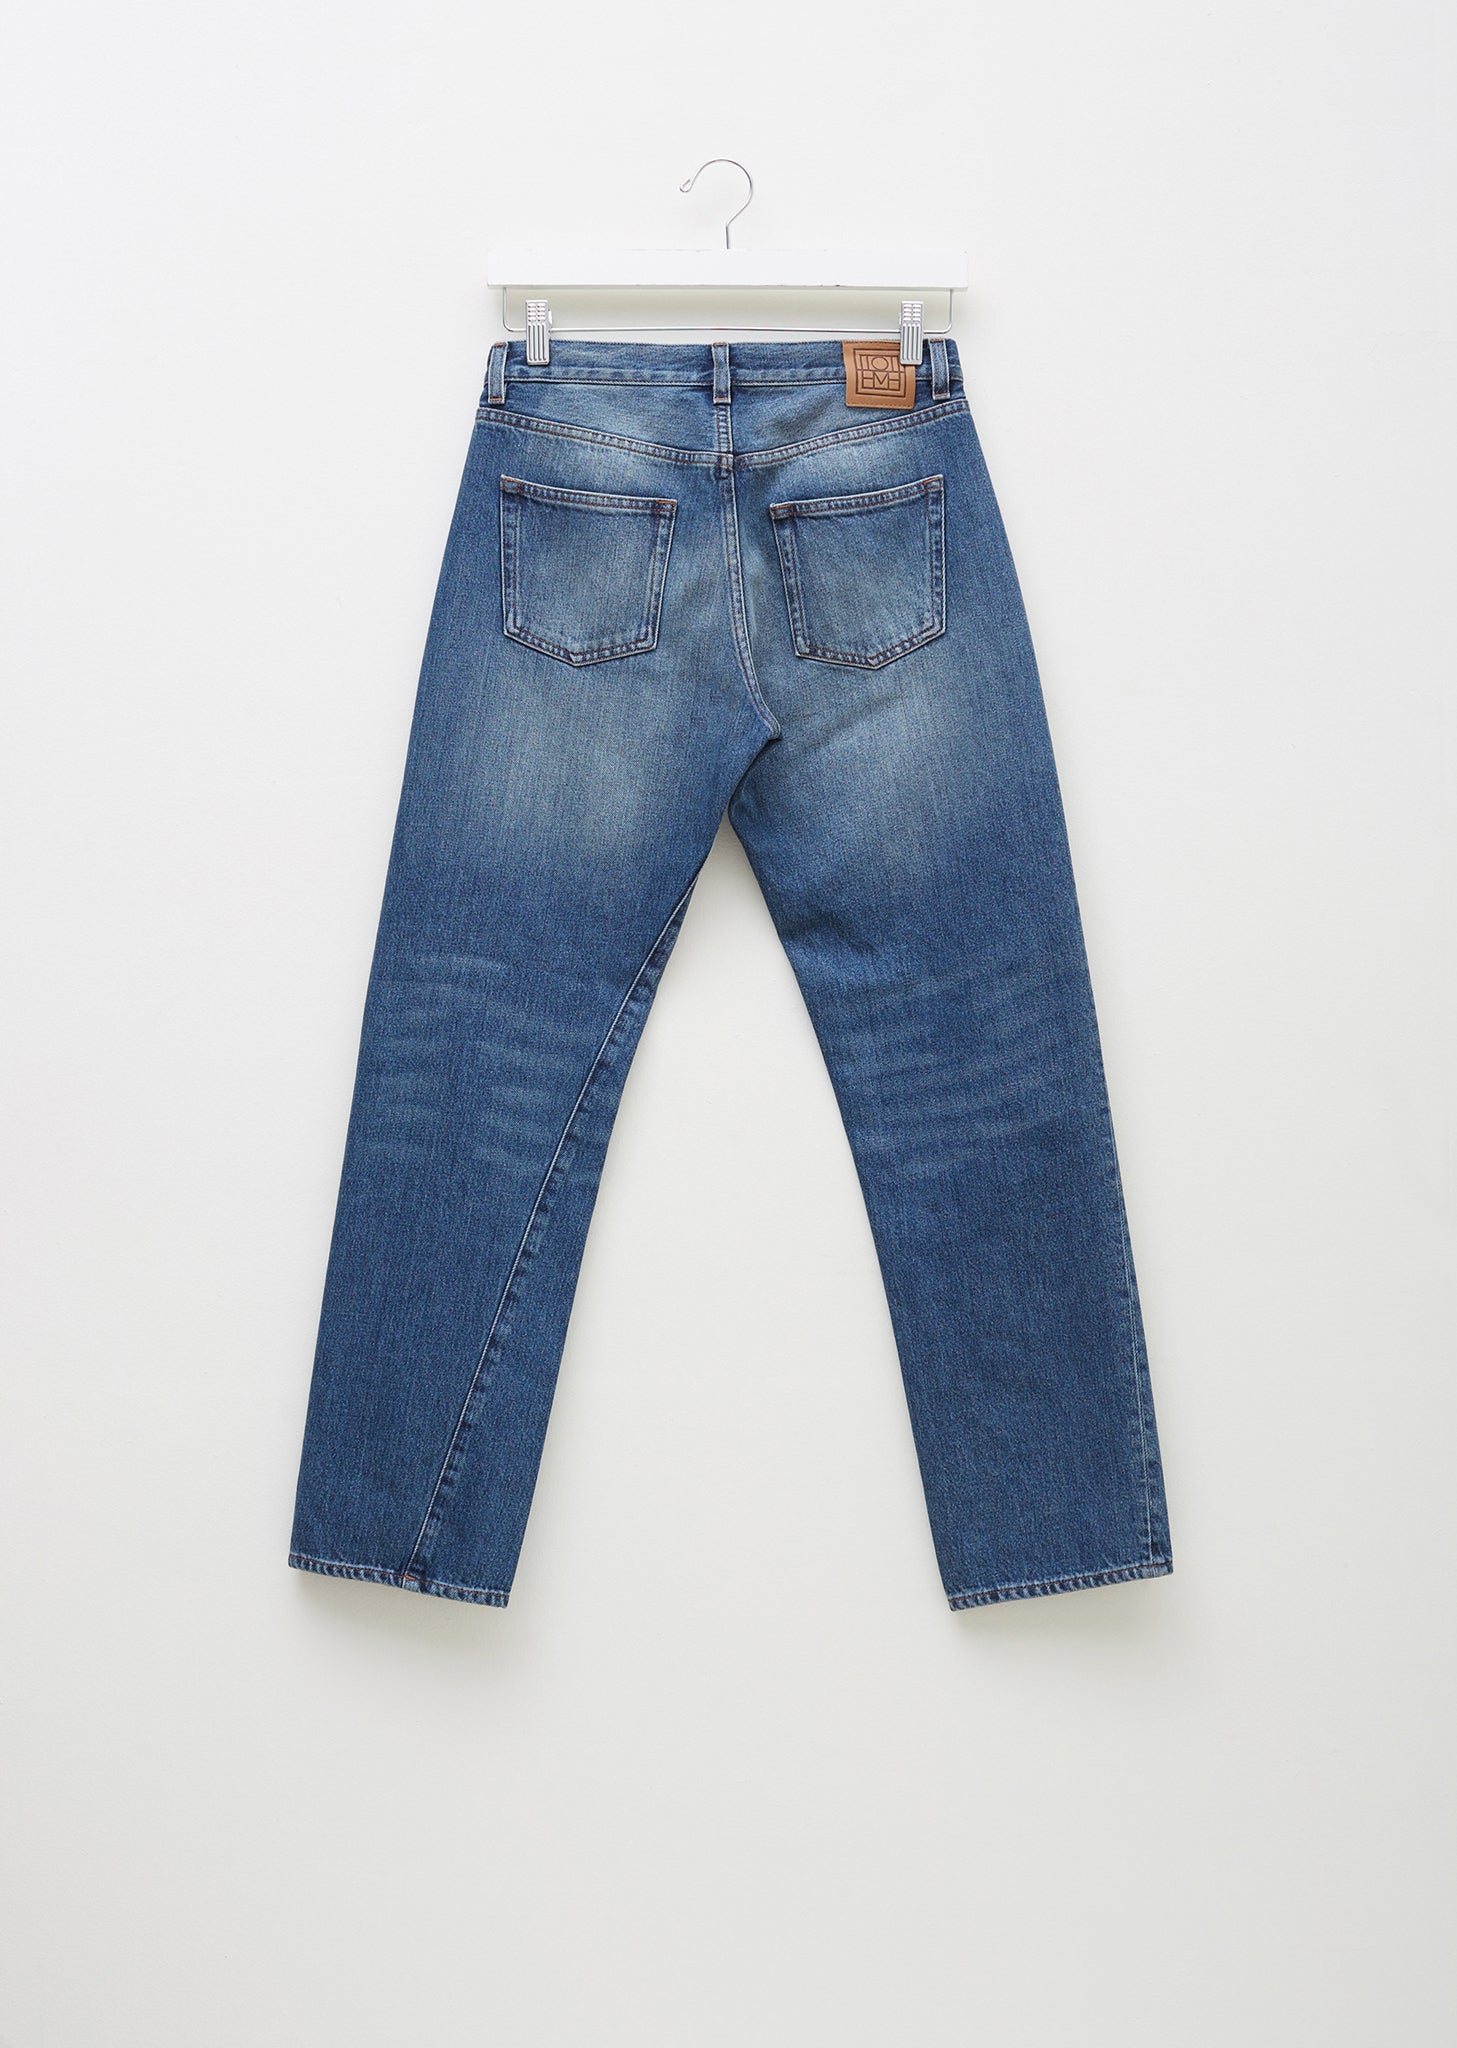 Original Jeans by Totême- La Garçonne